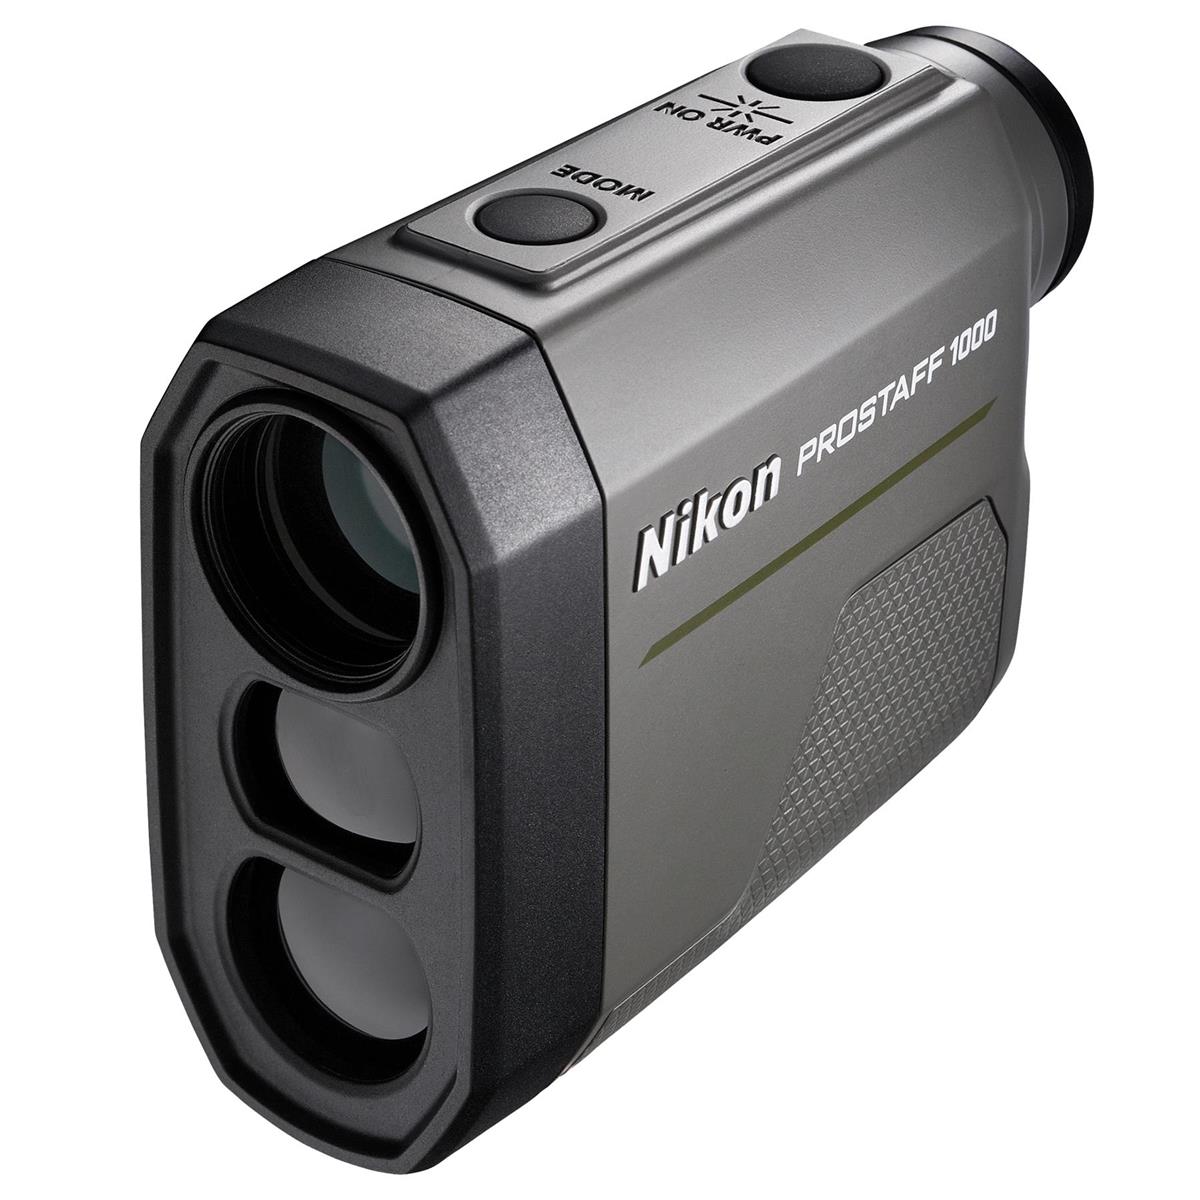 

Nikon ProStaff 1000 Laser Rangefinder